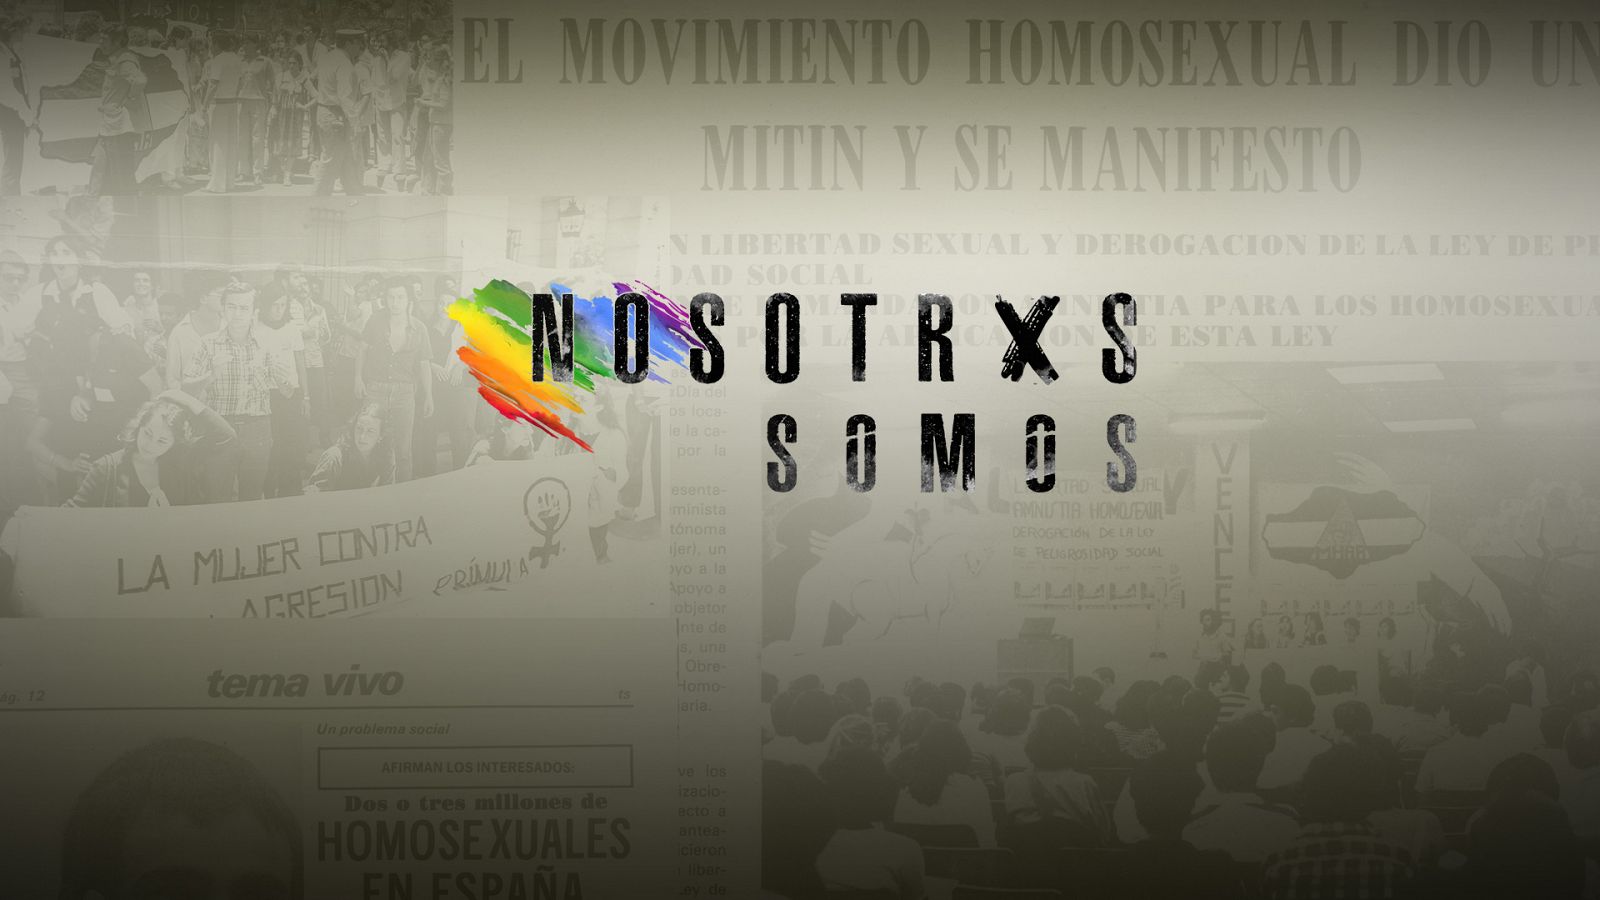 Nosotrxs somos - Teaser de la serie documental 'Nosotrxs Somos'